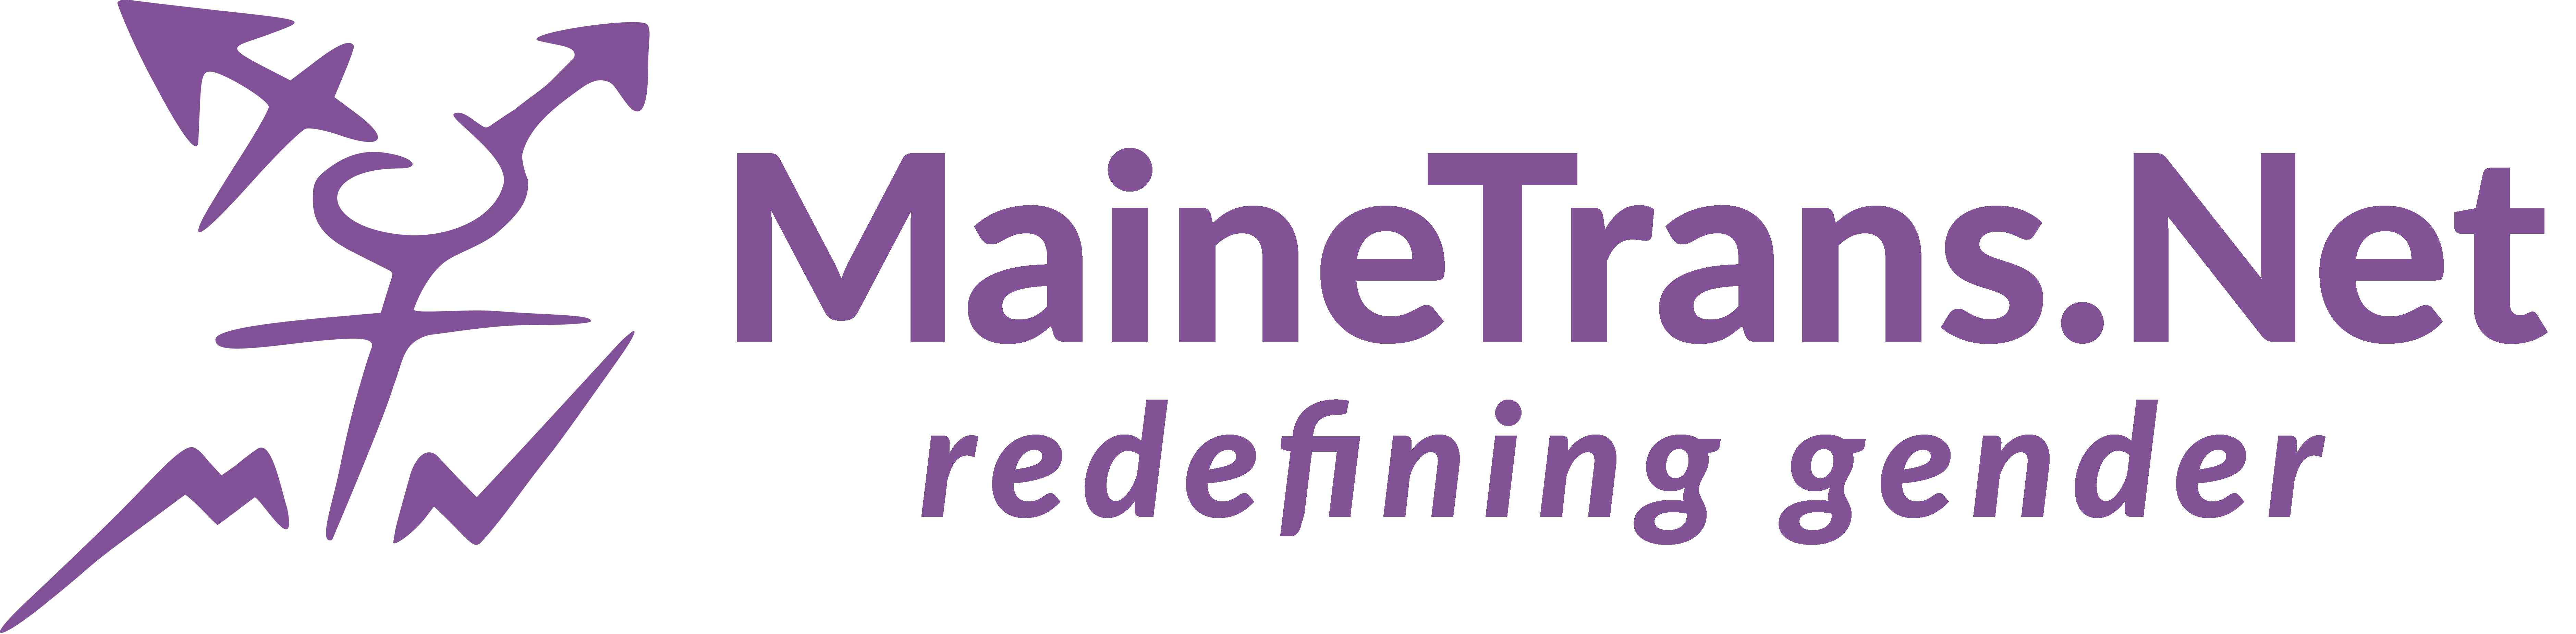 Maine Transgender Network Inc. logo